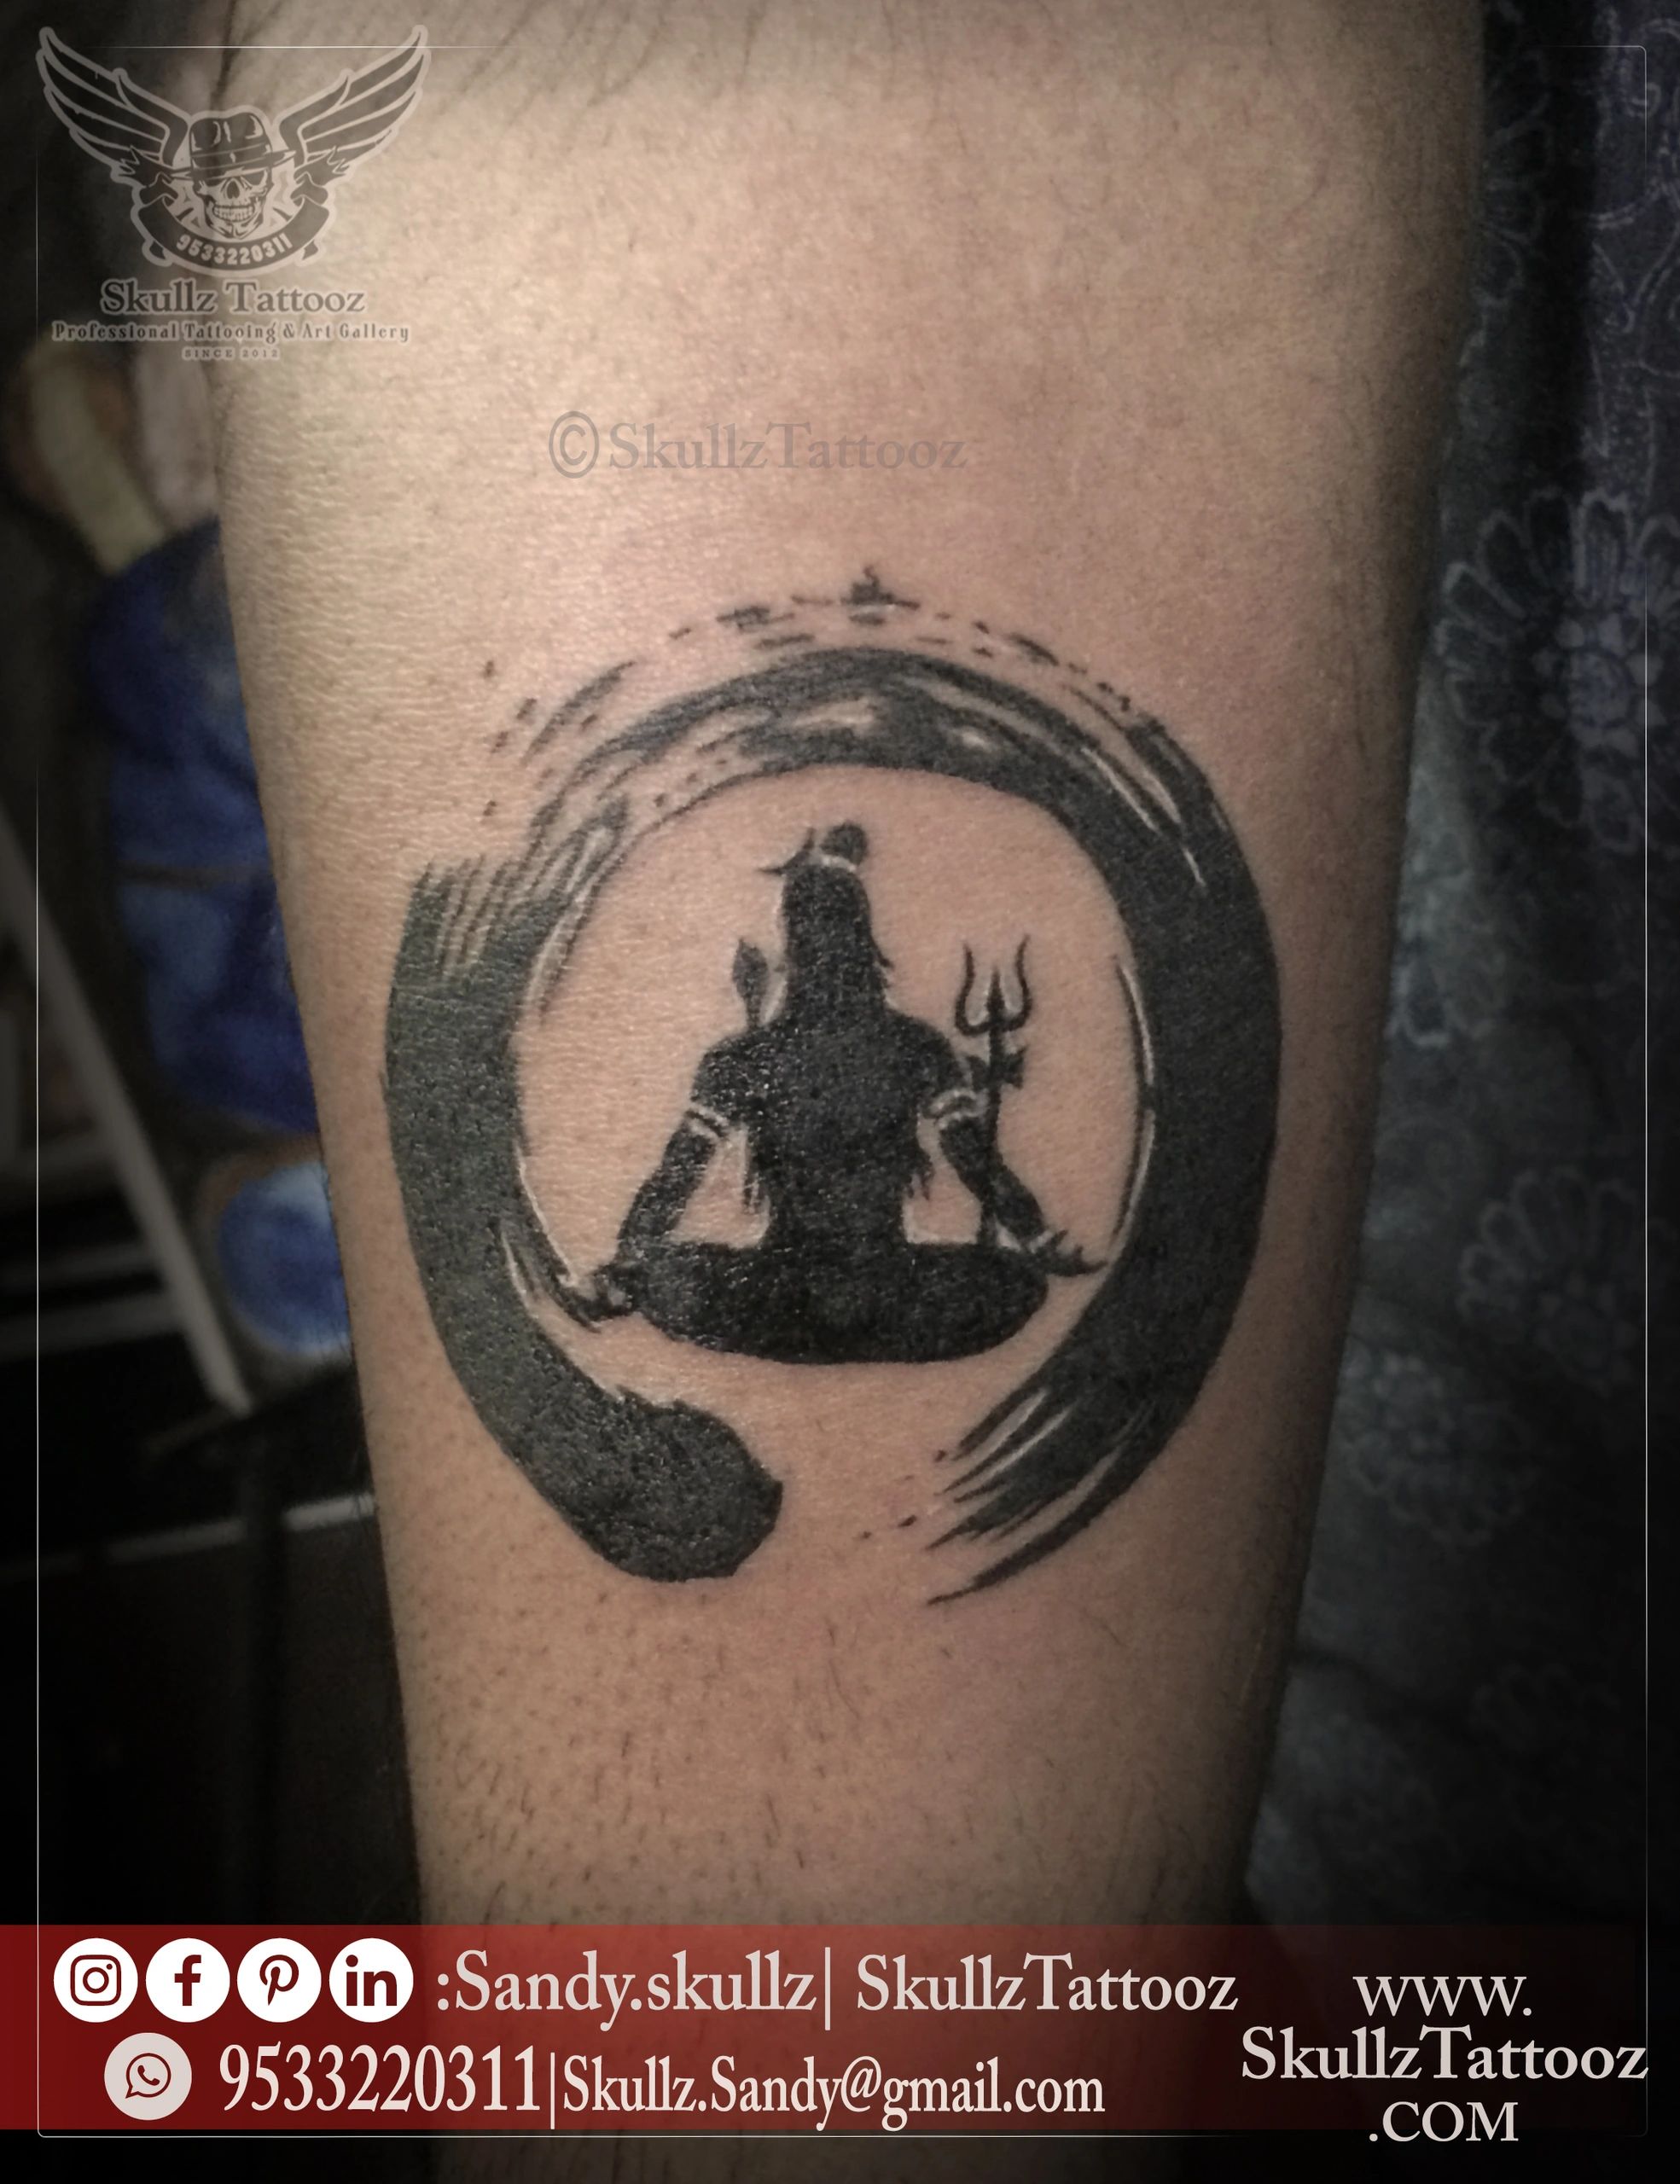 The Era of Lord Shiva Tattoos  Delhi Tattoo Studio